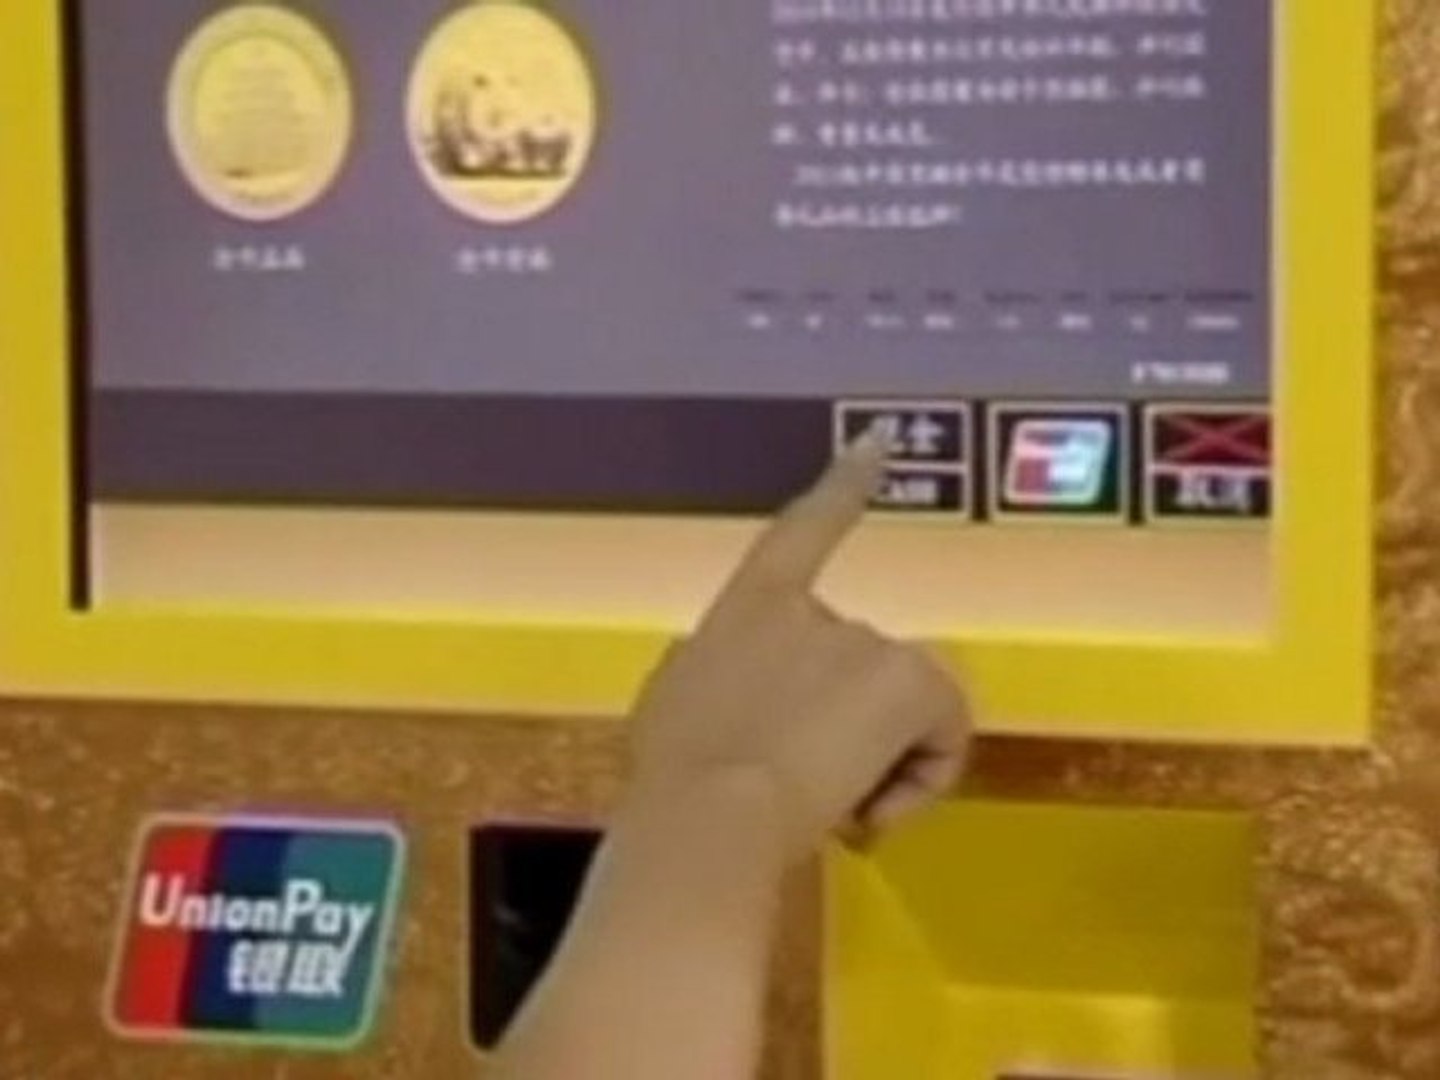 Distributeur automatique de lingots d'or en Chine - Vidéo Dailymotion